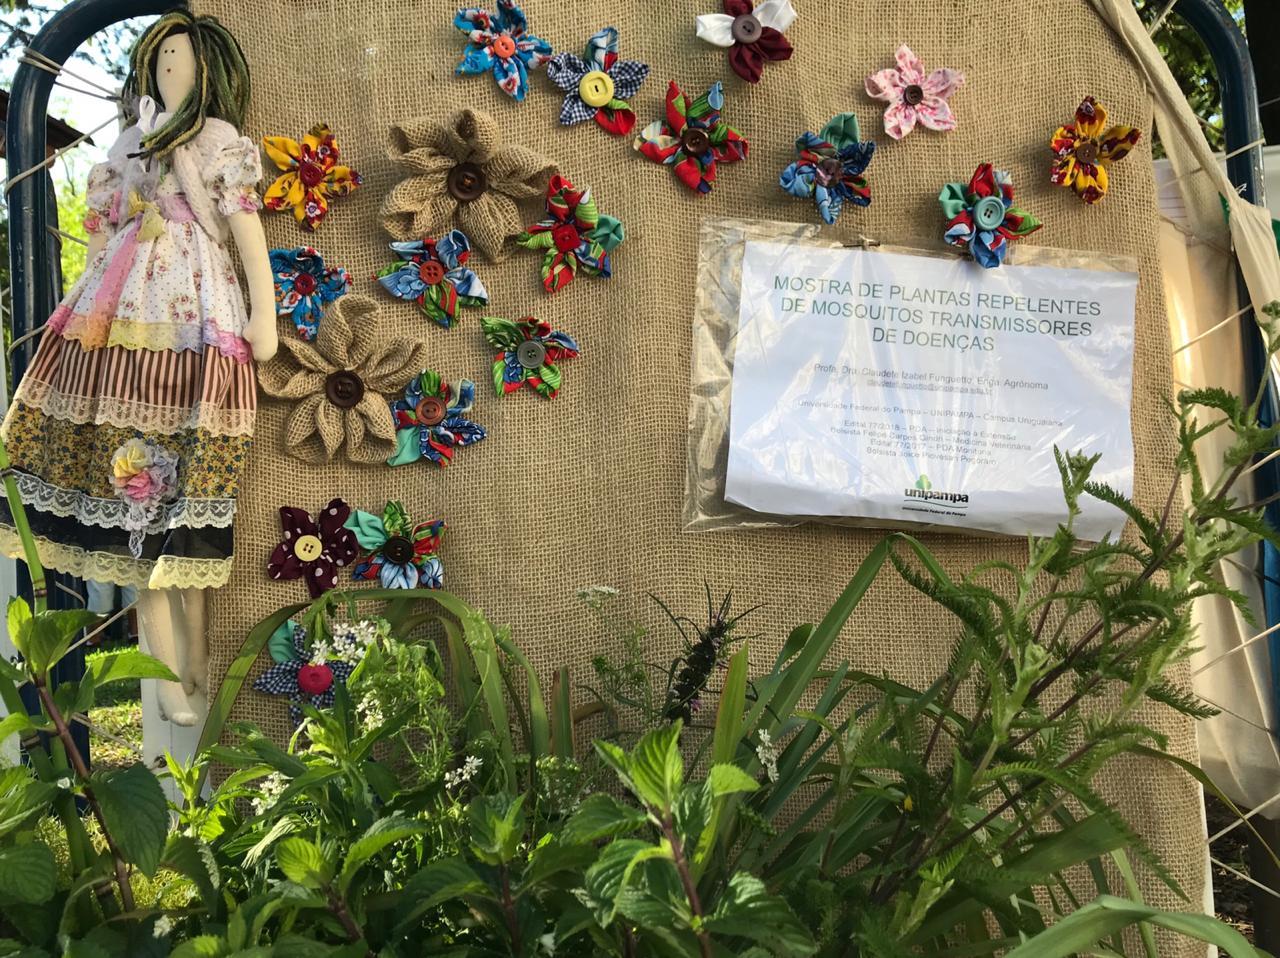 Um painel de juta com flores de juta e chita e uma boneca de pano fazem fundo para plantas repelentes e um cartaz.